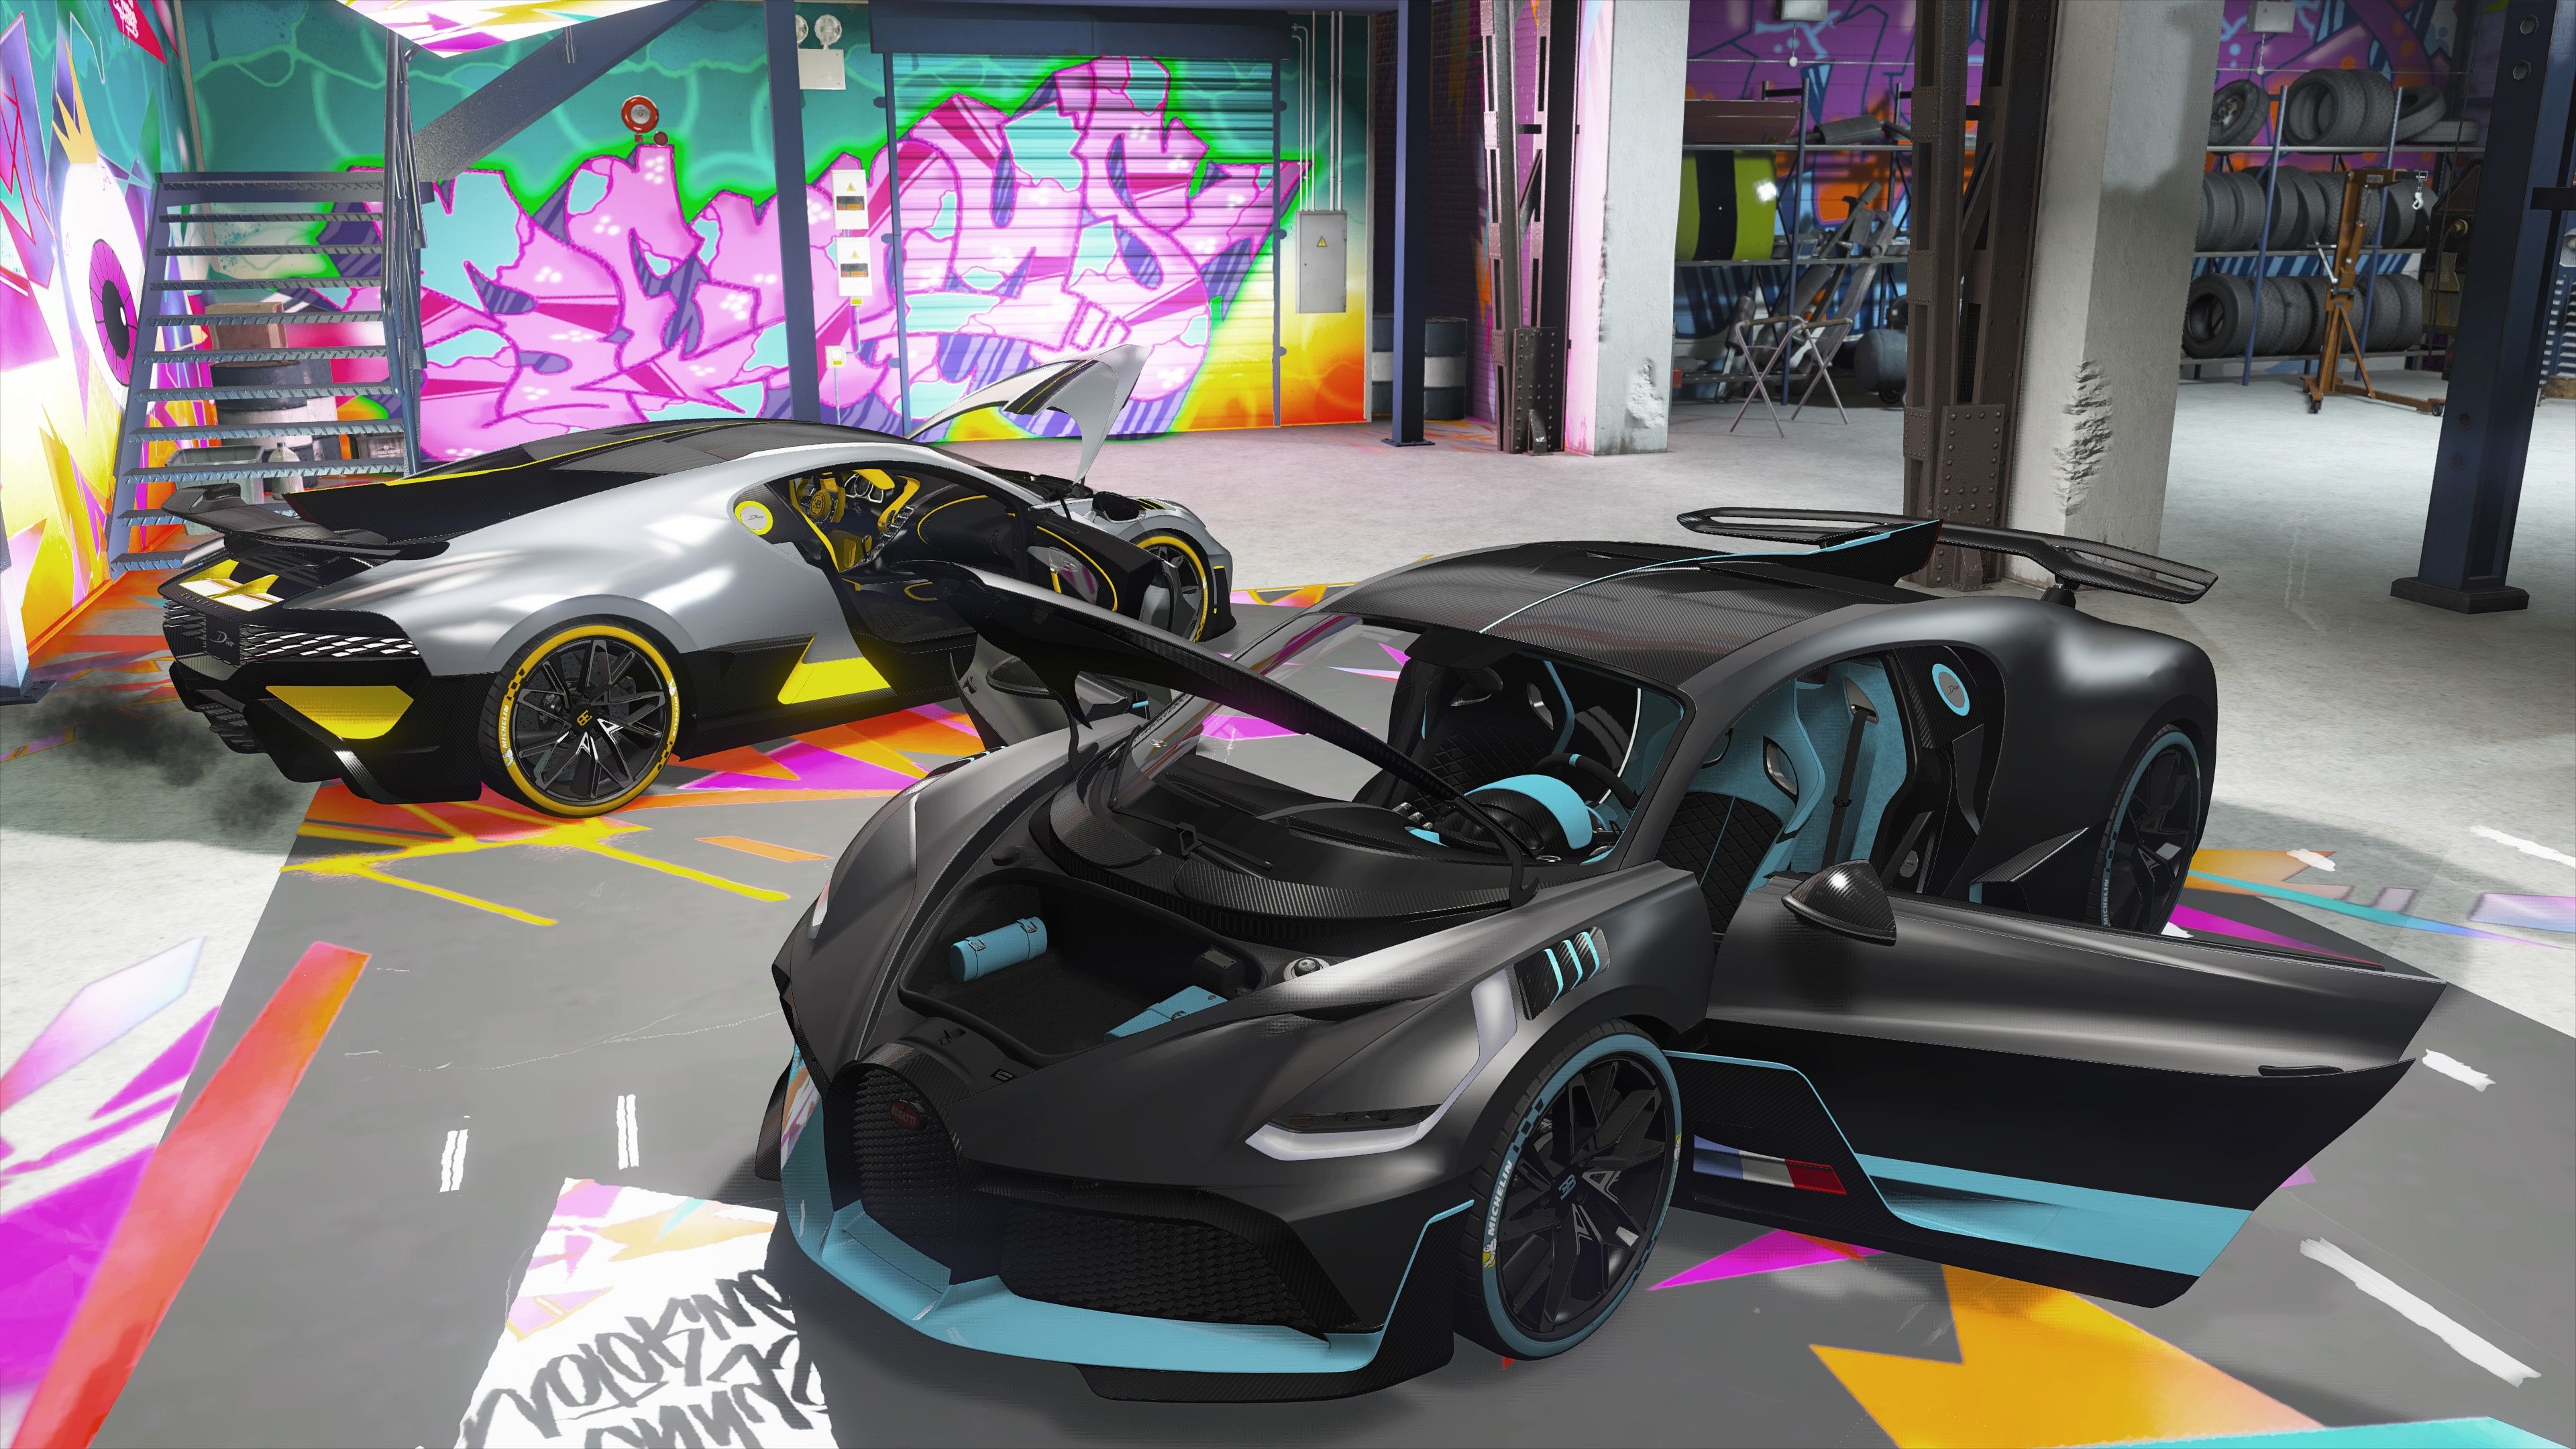 Bugatti Divo GTA, HD Games, 4k Wallpaper, Image, Background, Photo and Picture